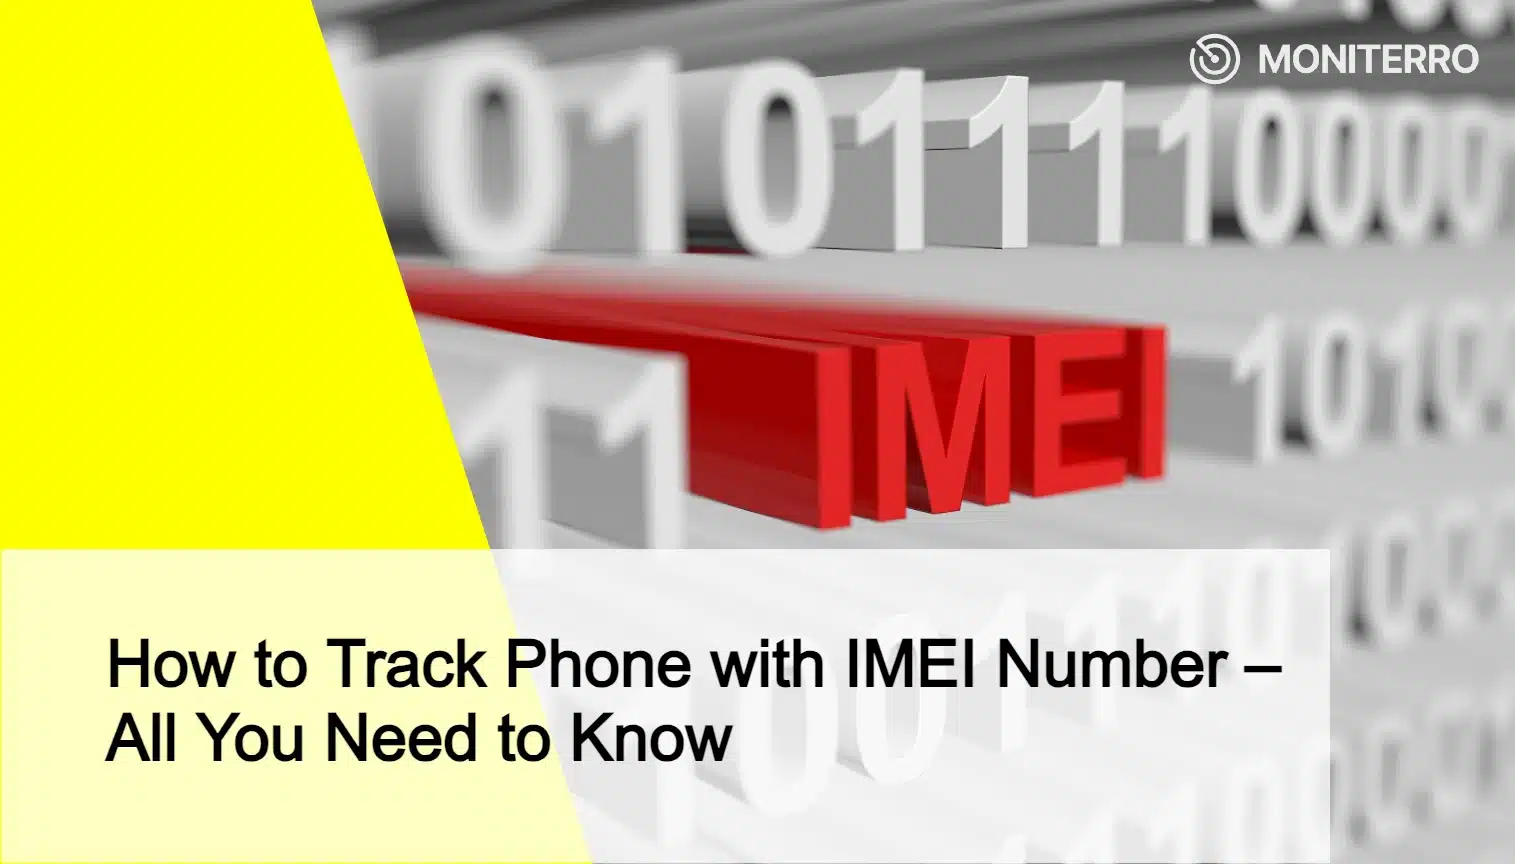 Come rintracciare il telefono con il numero IMEI - Tutto quello che c'è da sapere